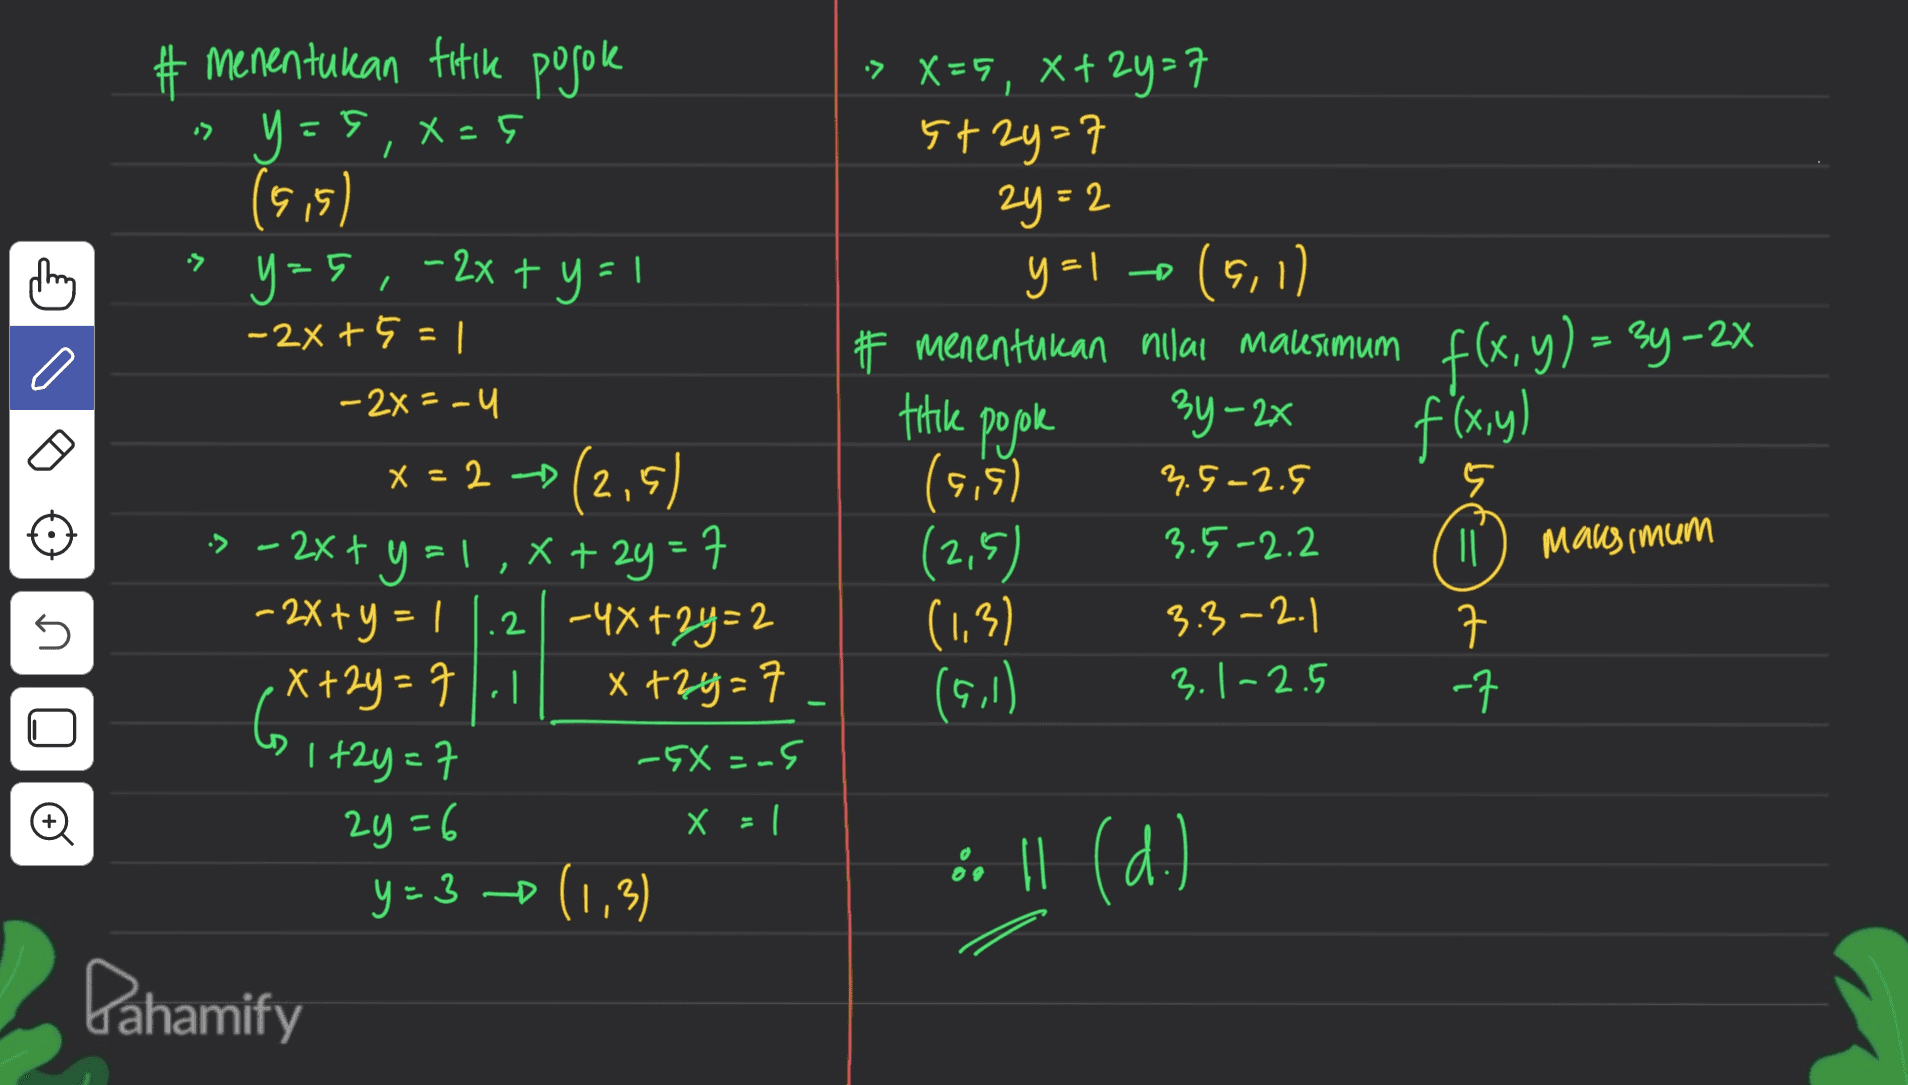 » X=5, 8+2y=7 5+2y=7 :> 2y=2 2 •> O titike posok f(x,y) o menentukan titik pojoke y=5, Xaç (9,5) y=5,- 2x + y = 1 -2x + 5 = 1 -2x = -4 x = 2 (2,5) 3 - 2x + y = 1,X+ 2y = 7 - 2x + y = 1.2 -4x +2y = 2 x+2y = 7.1 x +2y= 1+2y=7 -5X = -5 2y=6 X = 1 y=3 (1,3) y=1 (5,1) # menentukan nilai maksimum f(x, y) = 24-2X 3y - 2x (5,5) (2,5) ID maksimum (1,3) 7 3.9-2.5 3.5-2.2 n n 3.3-2.1 3.1-2.5 (9,1) -7 •. || (d.) Lahamify 